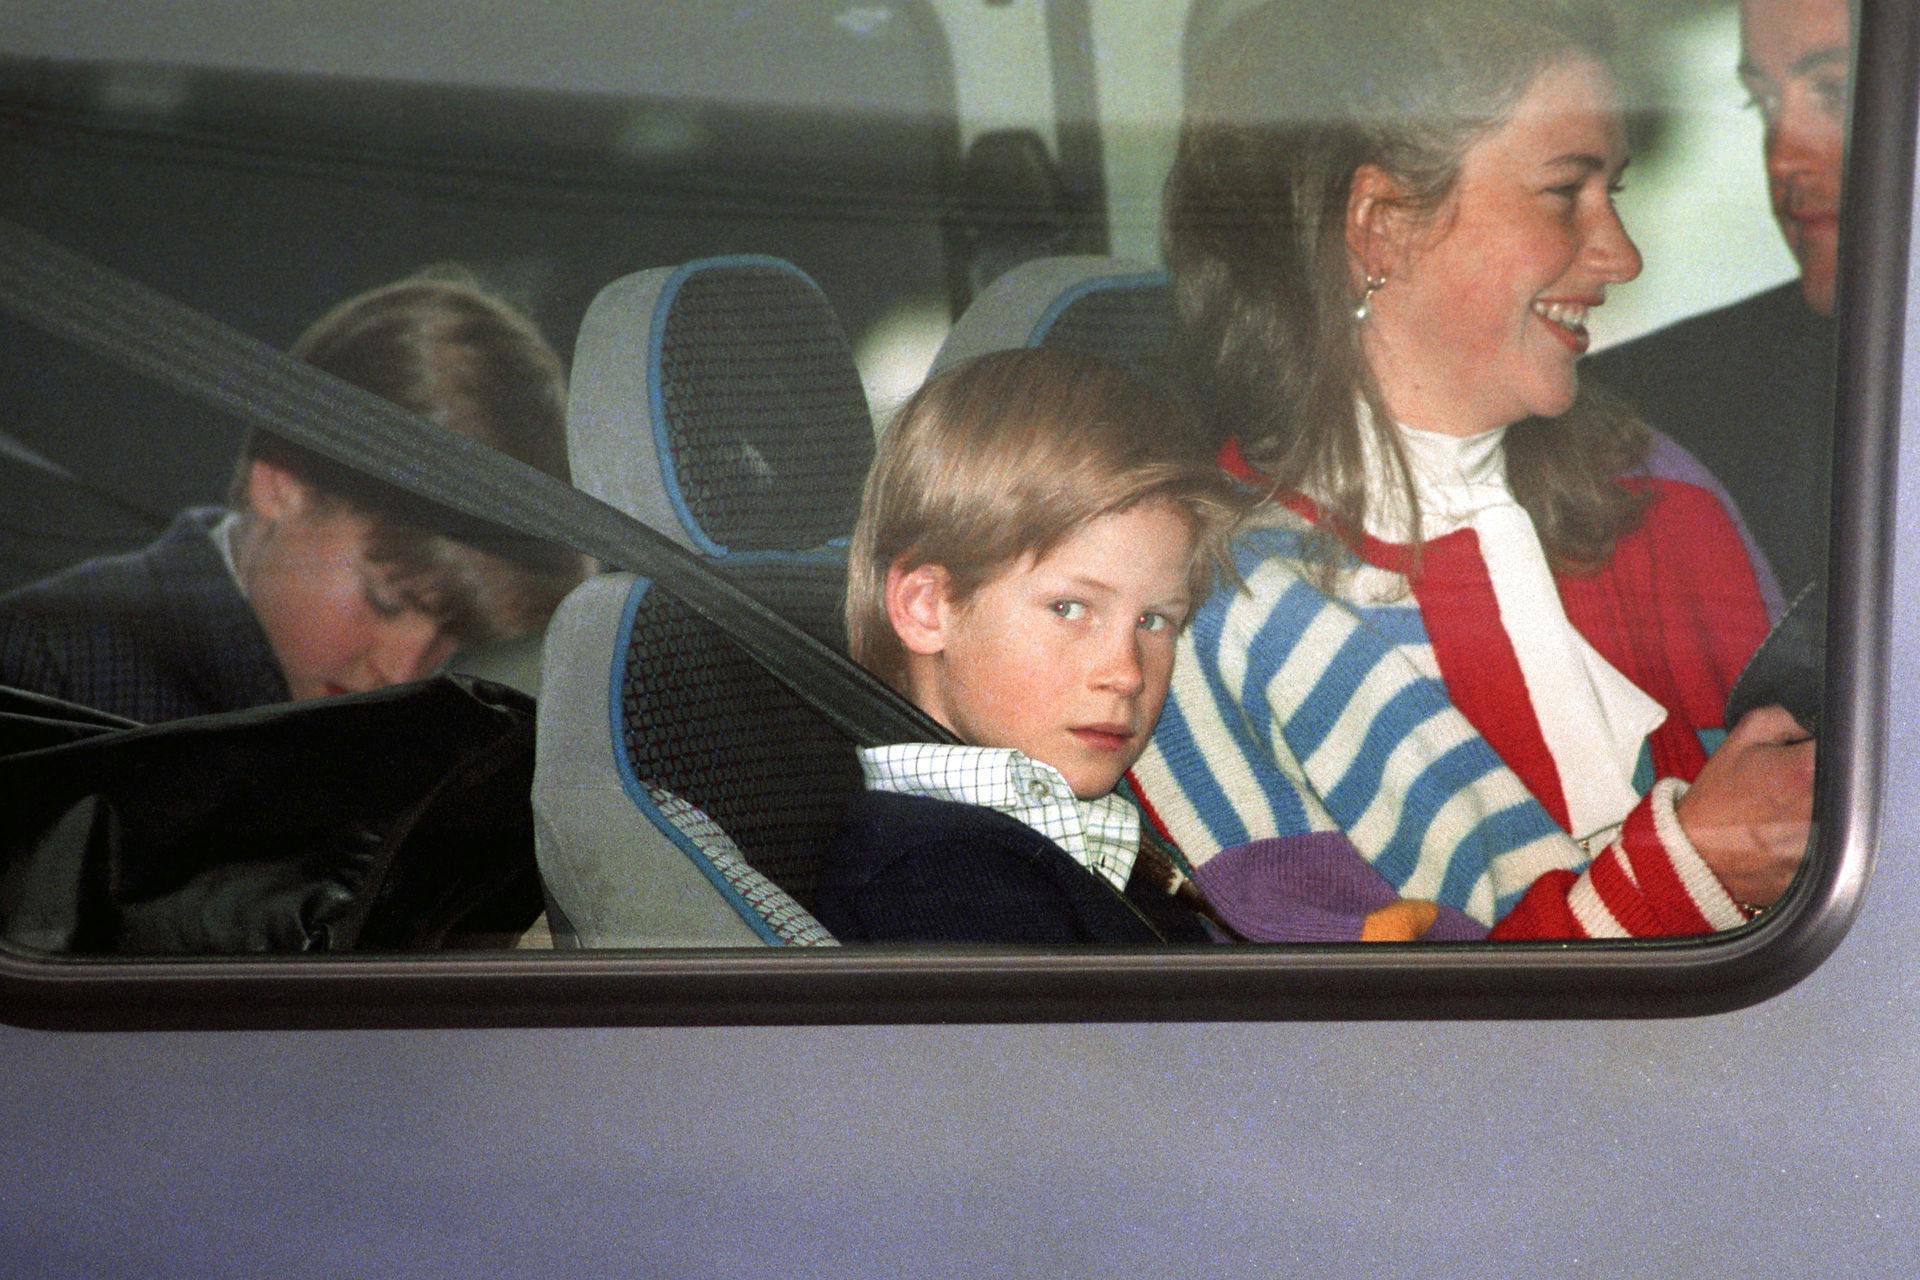 Tiggy Legge-Bourke var barnepige for prins William og prins Harry fra 1993 til 1999 – og hun var dermed helt tæt på prinsebrødrene i deres livs sværeste kriser.
